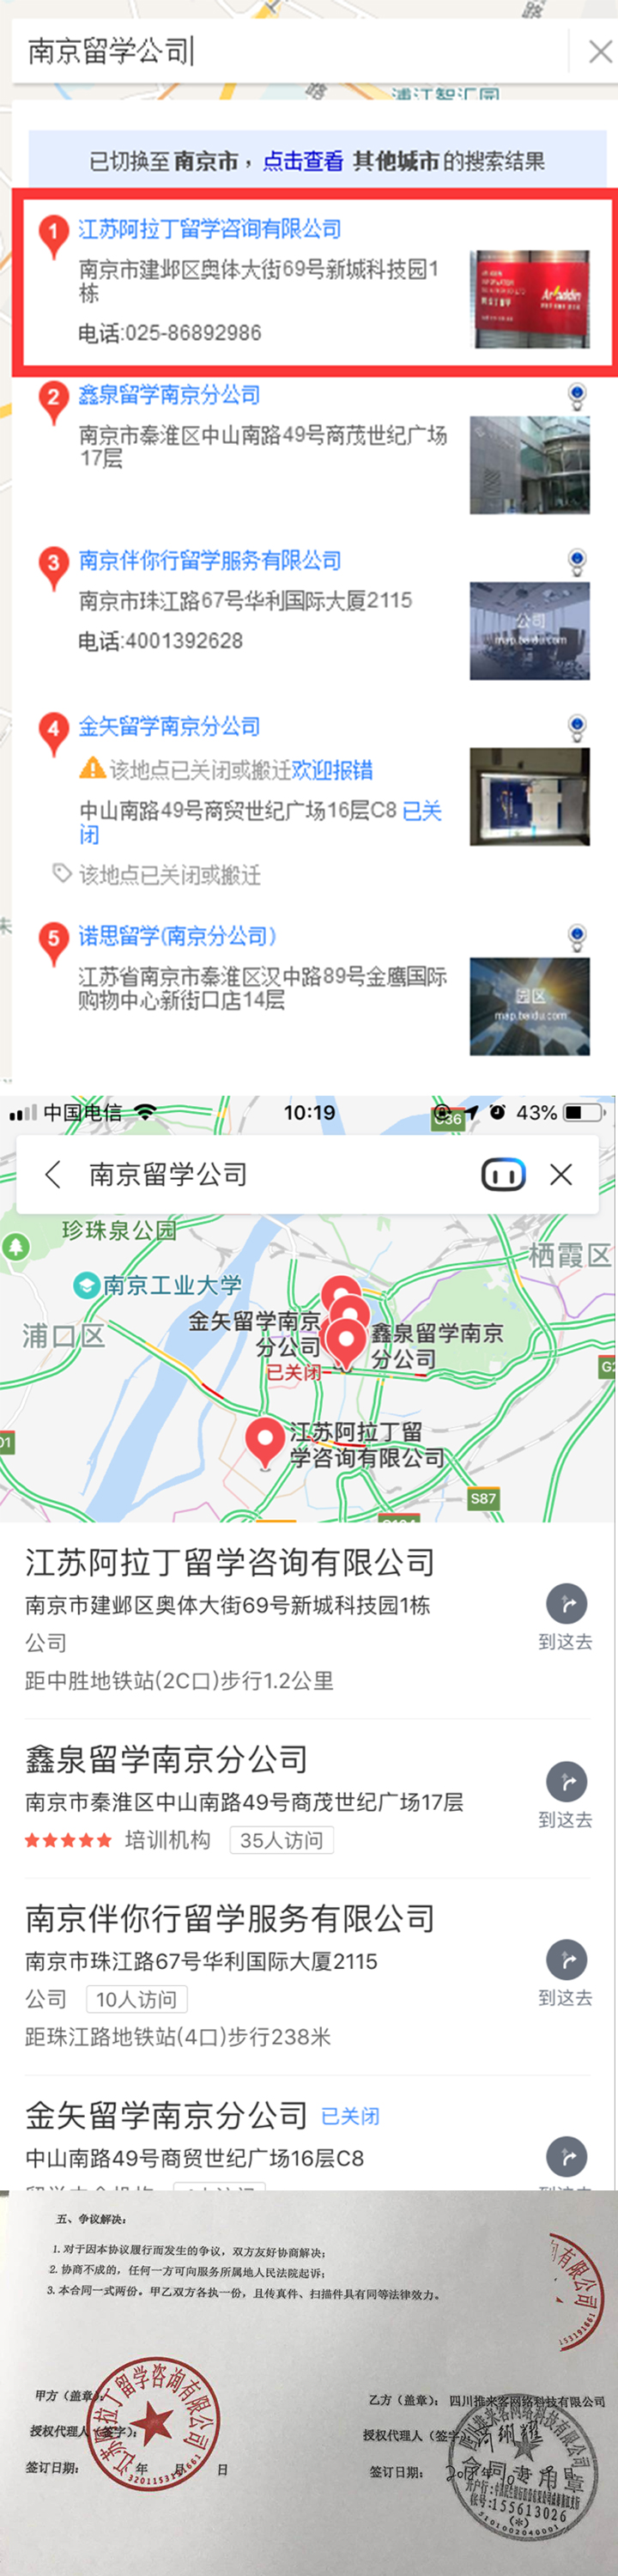 南京留学公司百度地图排名案例